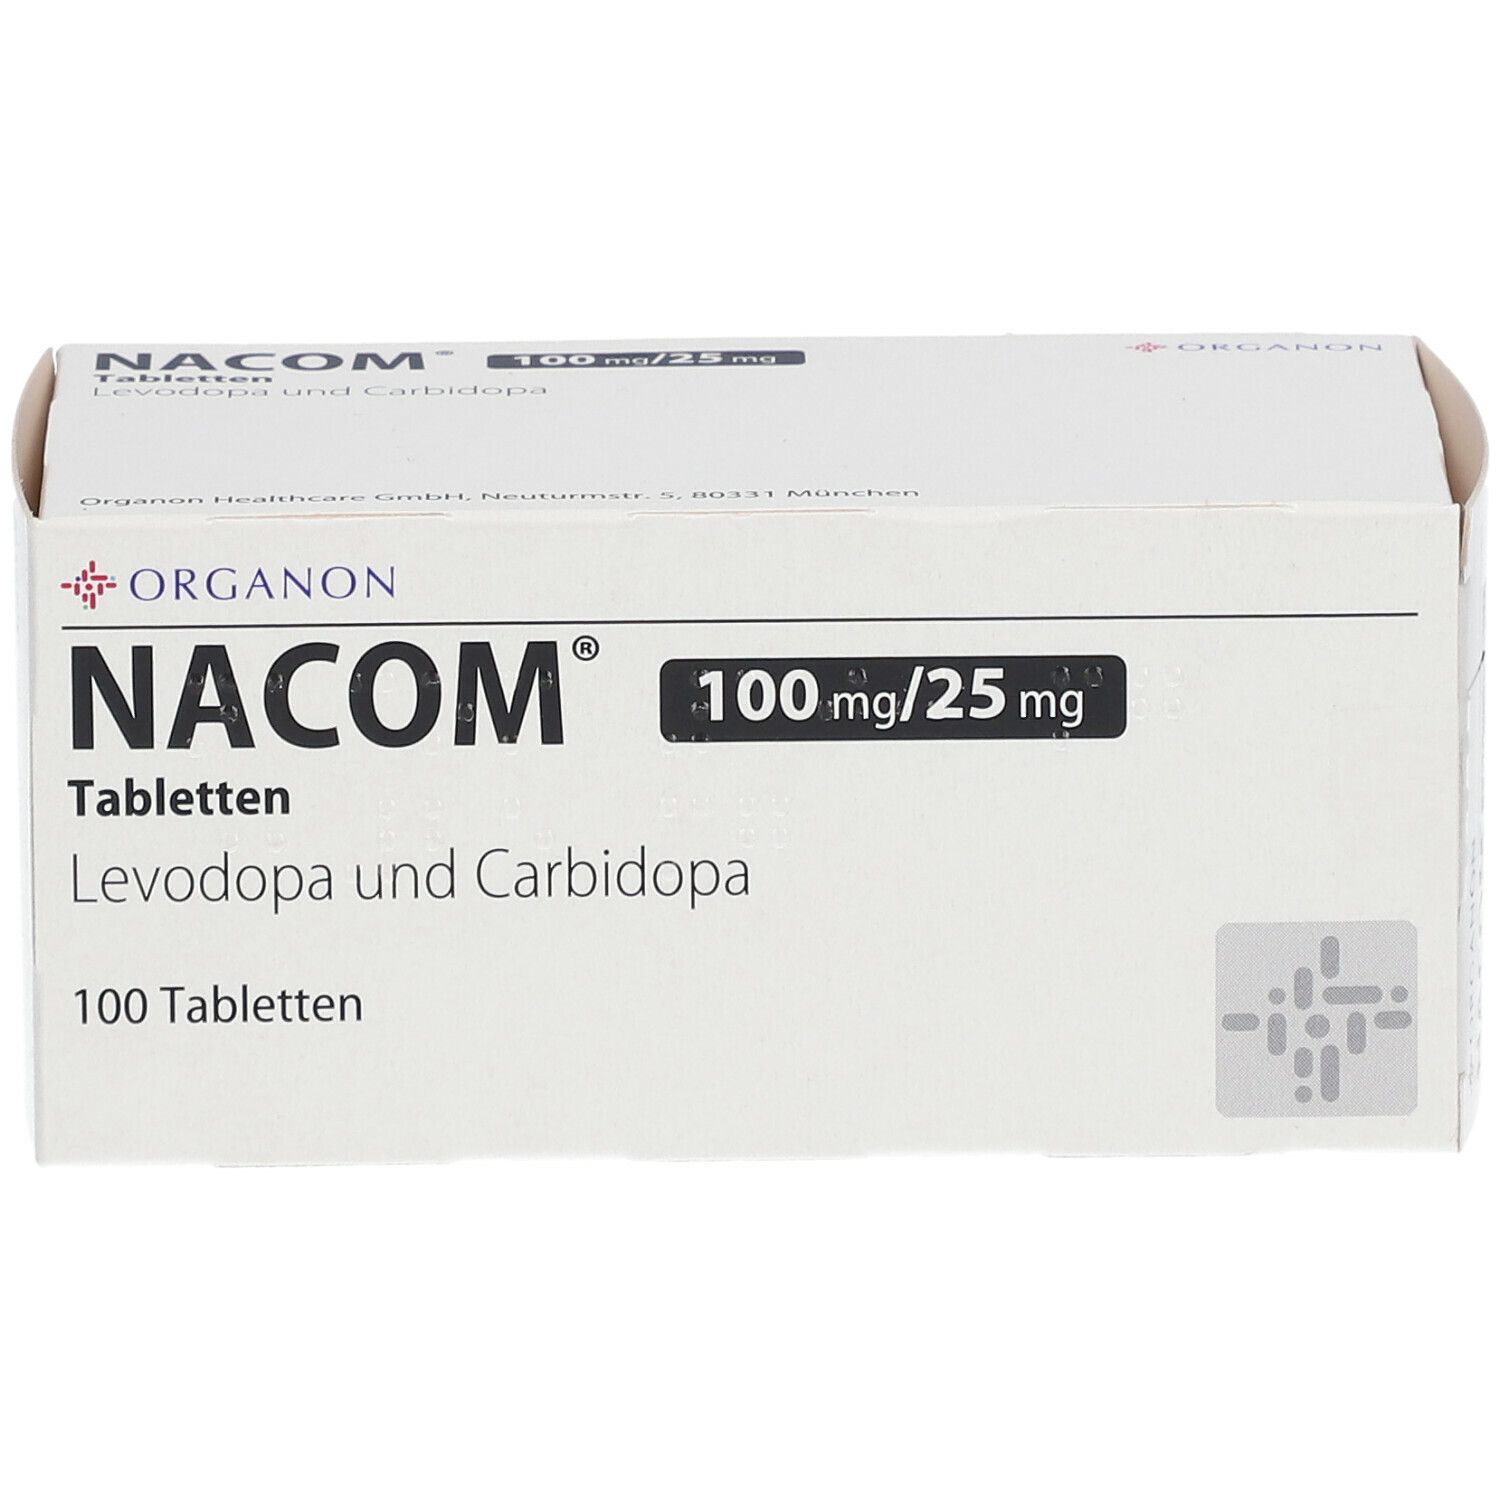 NACOM® 100 mg/25 mg